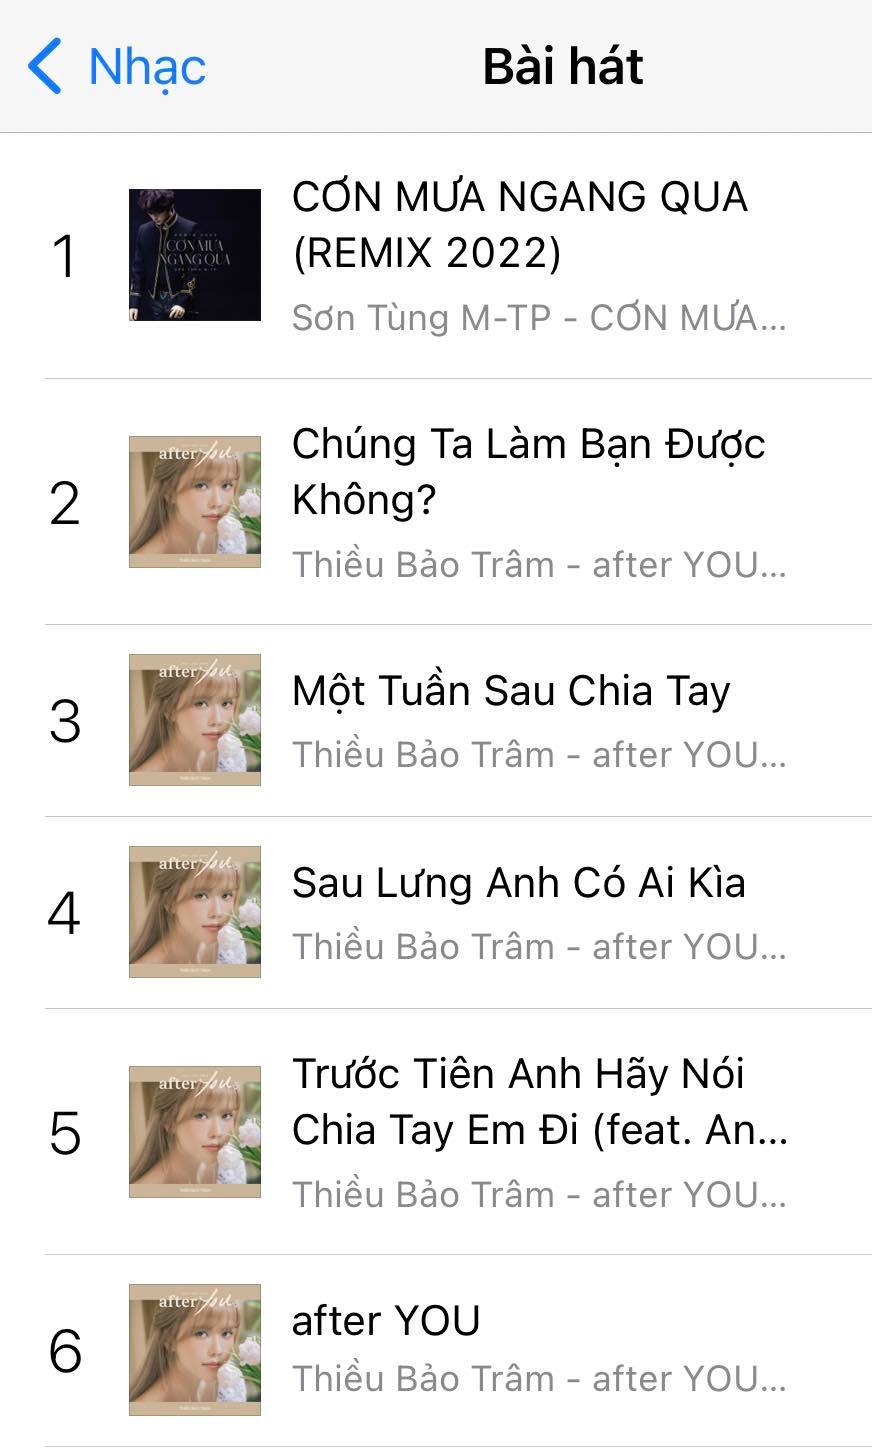 Sau màn PR bài hát trên story, Sơn Tùng M-TP bất ngờ vượt mặt Thiều Bảo Trâm trên bảng xếp hạng - ảnh 6